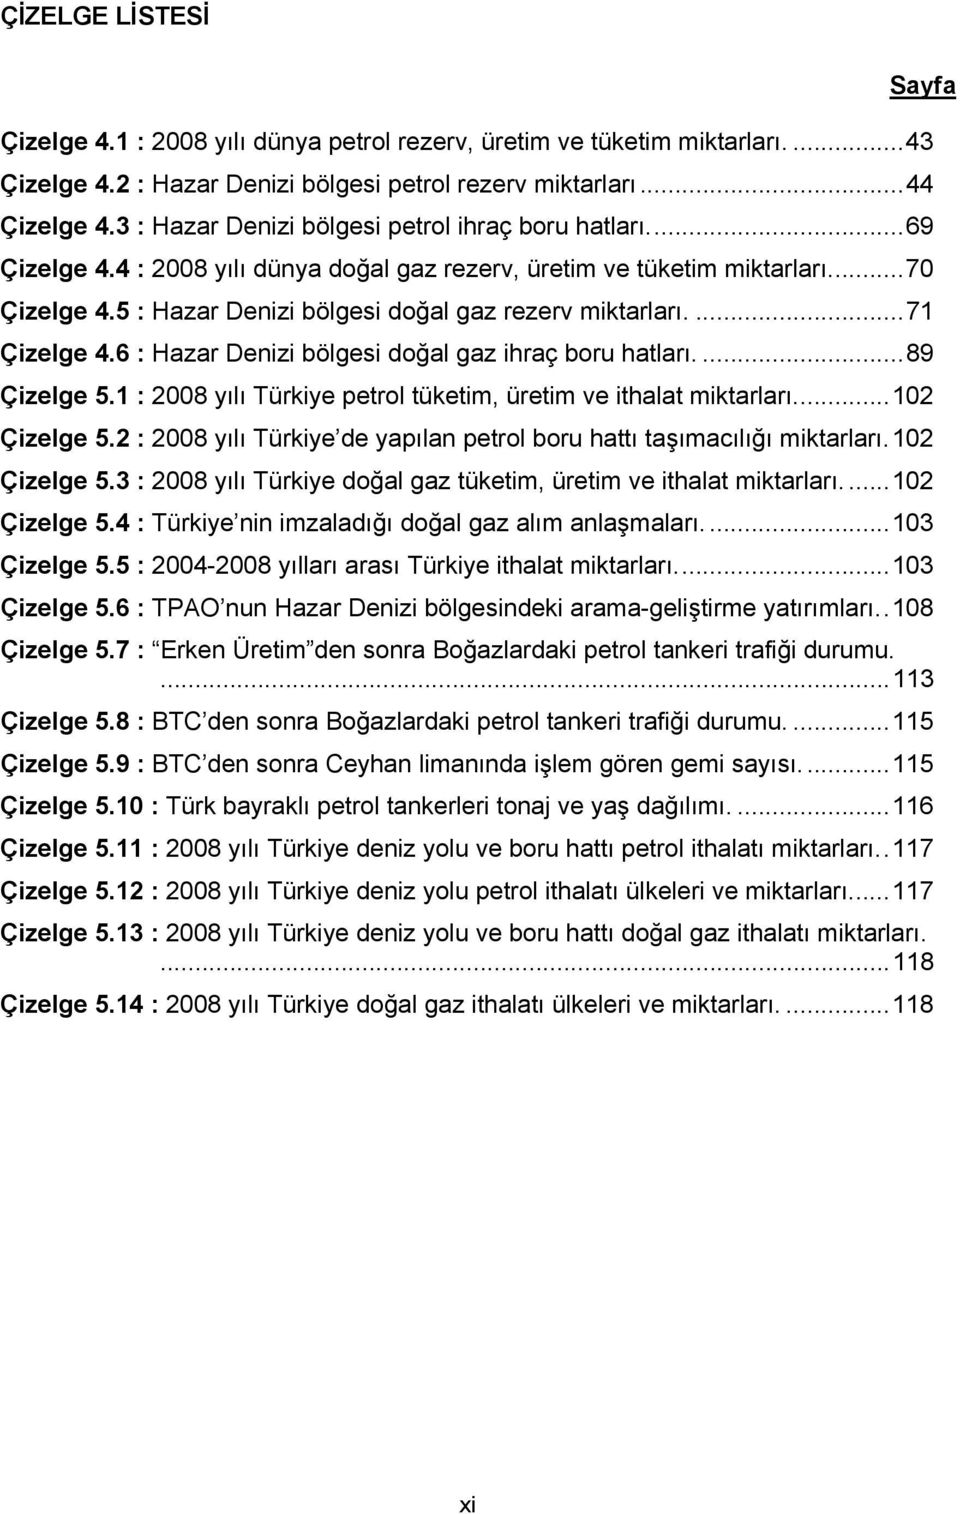 5 : Hazar Denizi bölgesi doğal gaz rezerv miktarları....71 Çizelge 4.6 : Hazar Denizi bölgesi doğal gaz ihraç boru hatları....89 Çizelge 5.